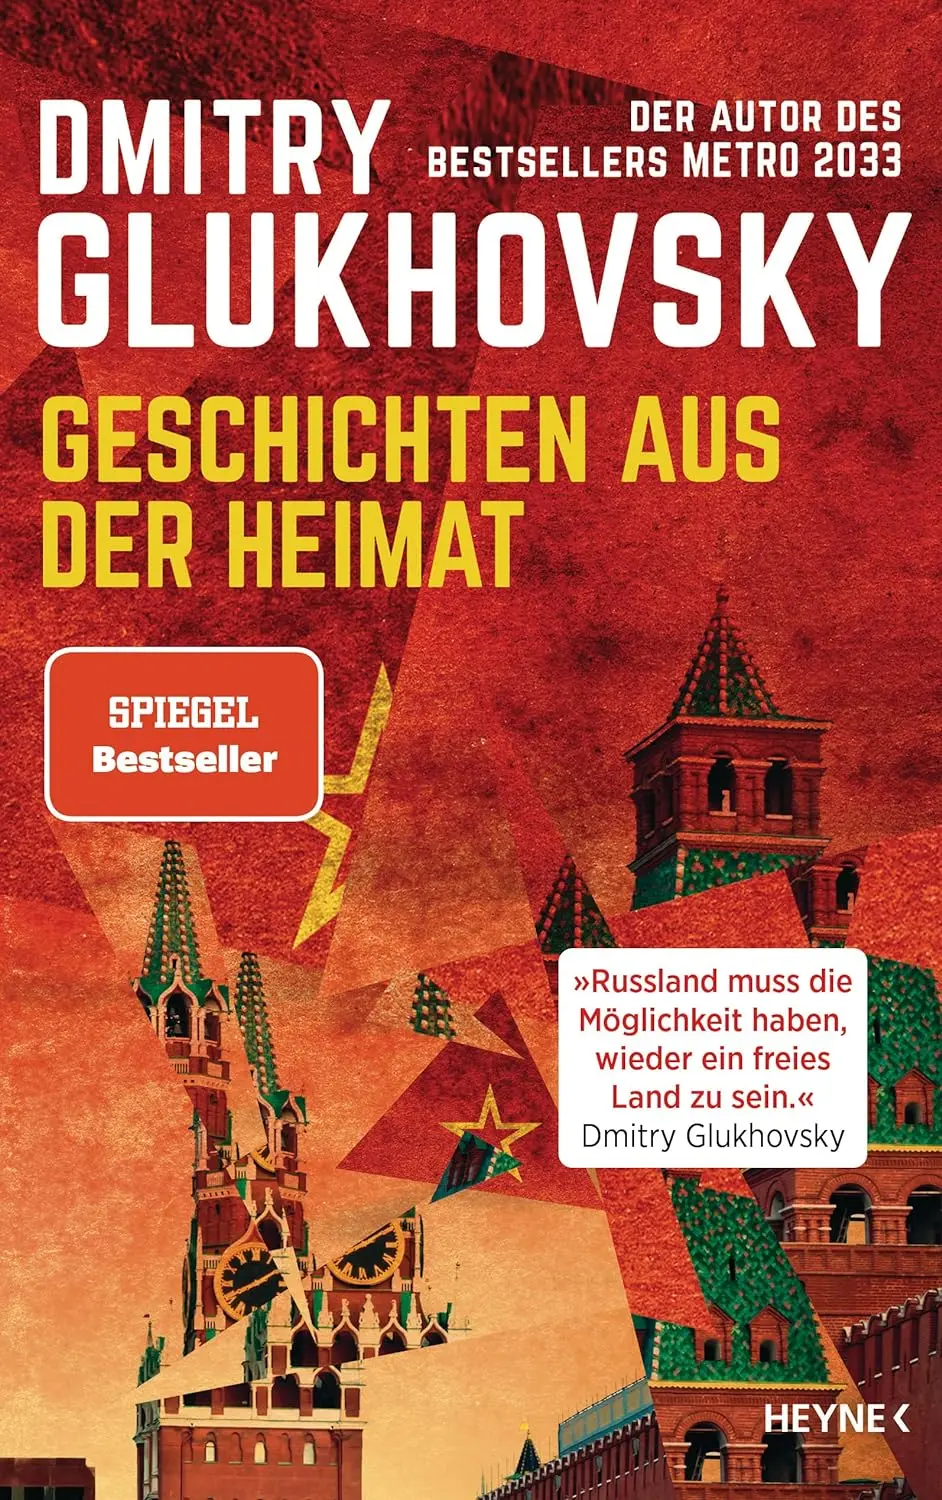 Buchcover: Dmitry Glukhosky, Geschichten aus der Heimat